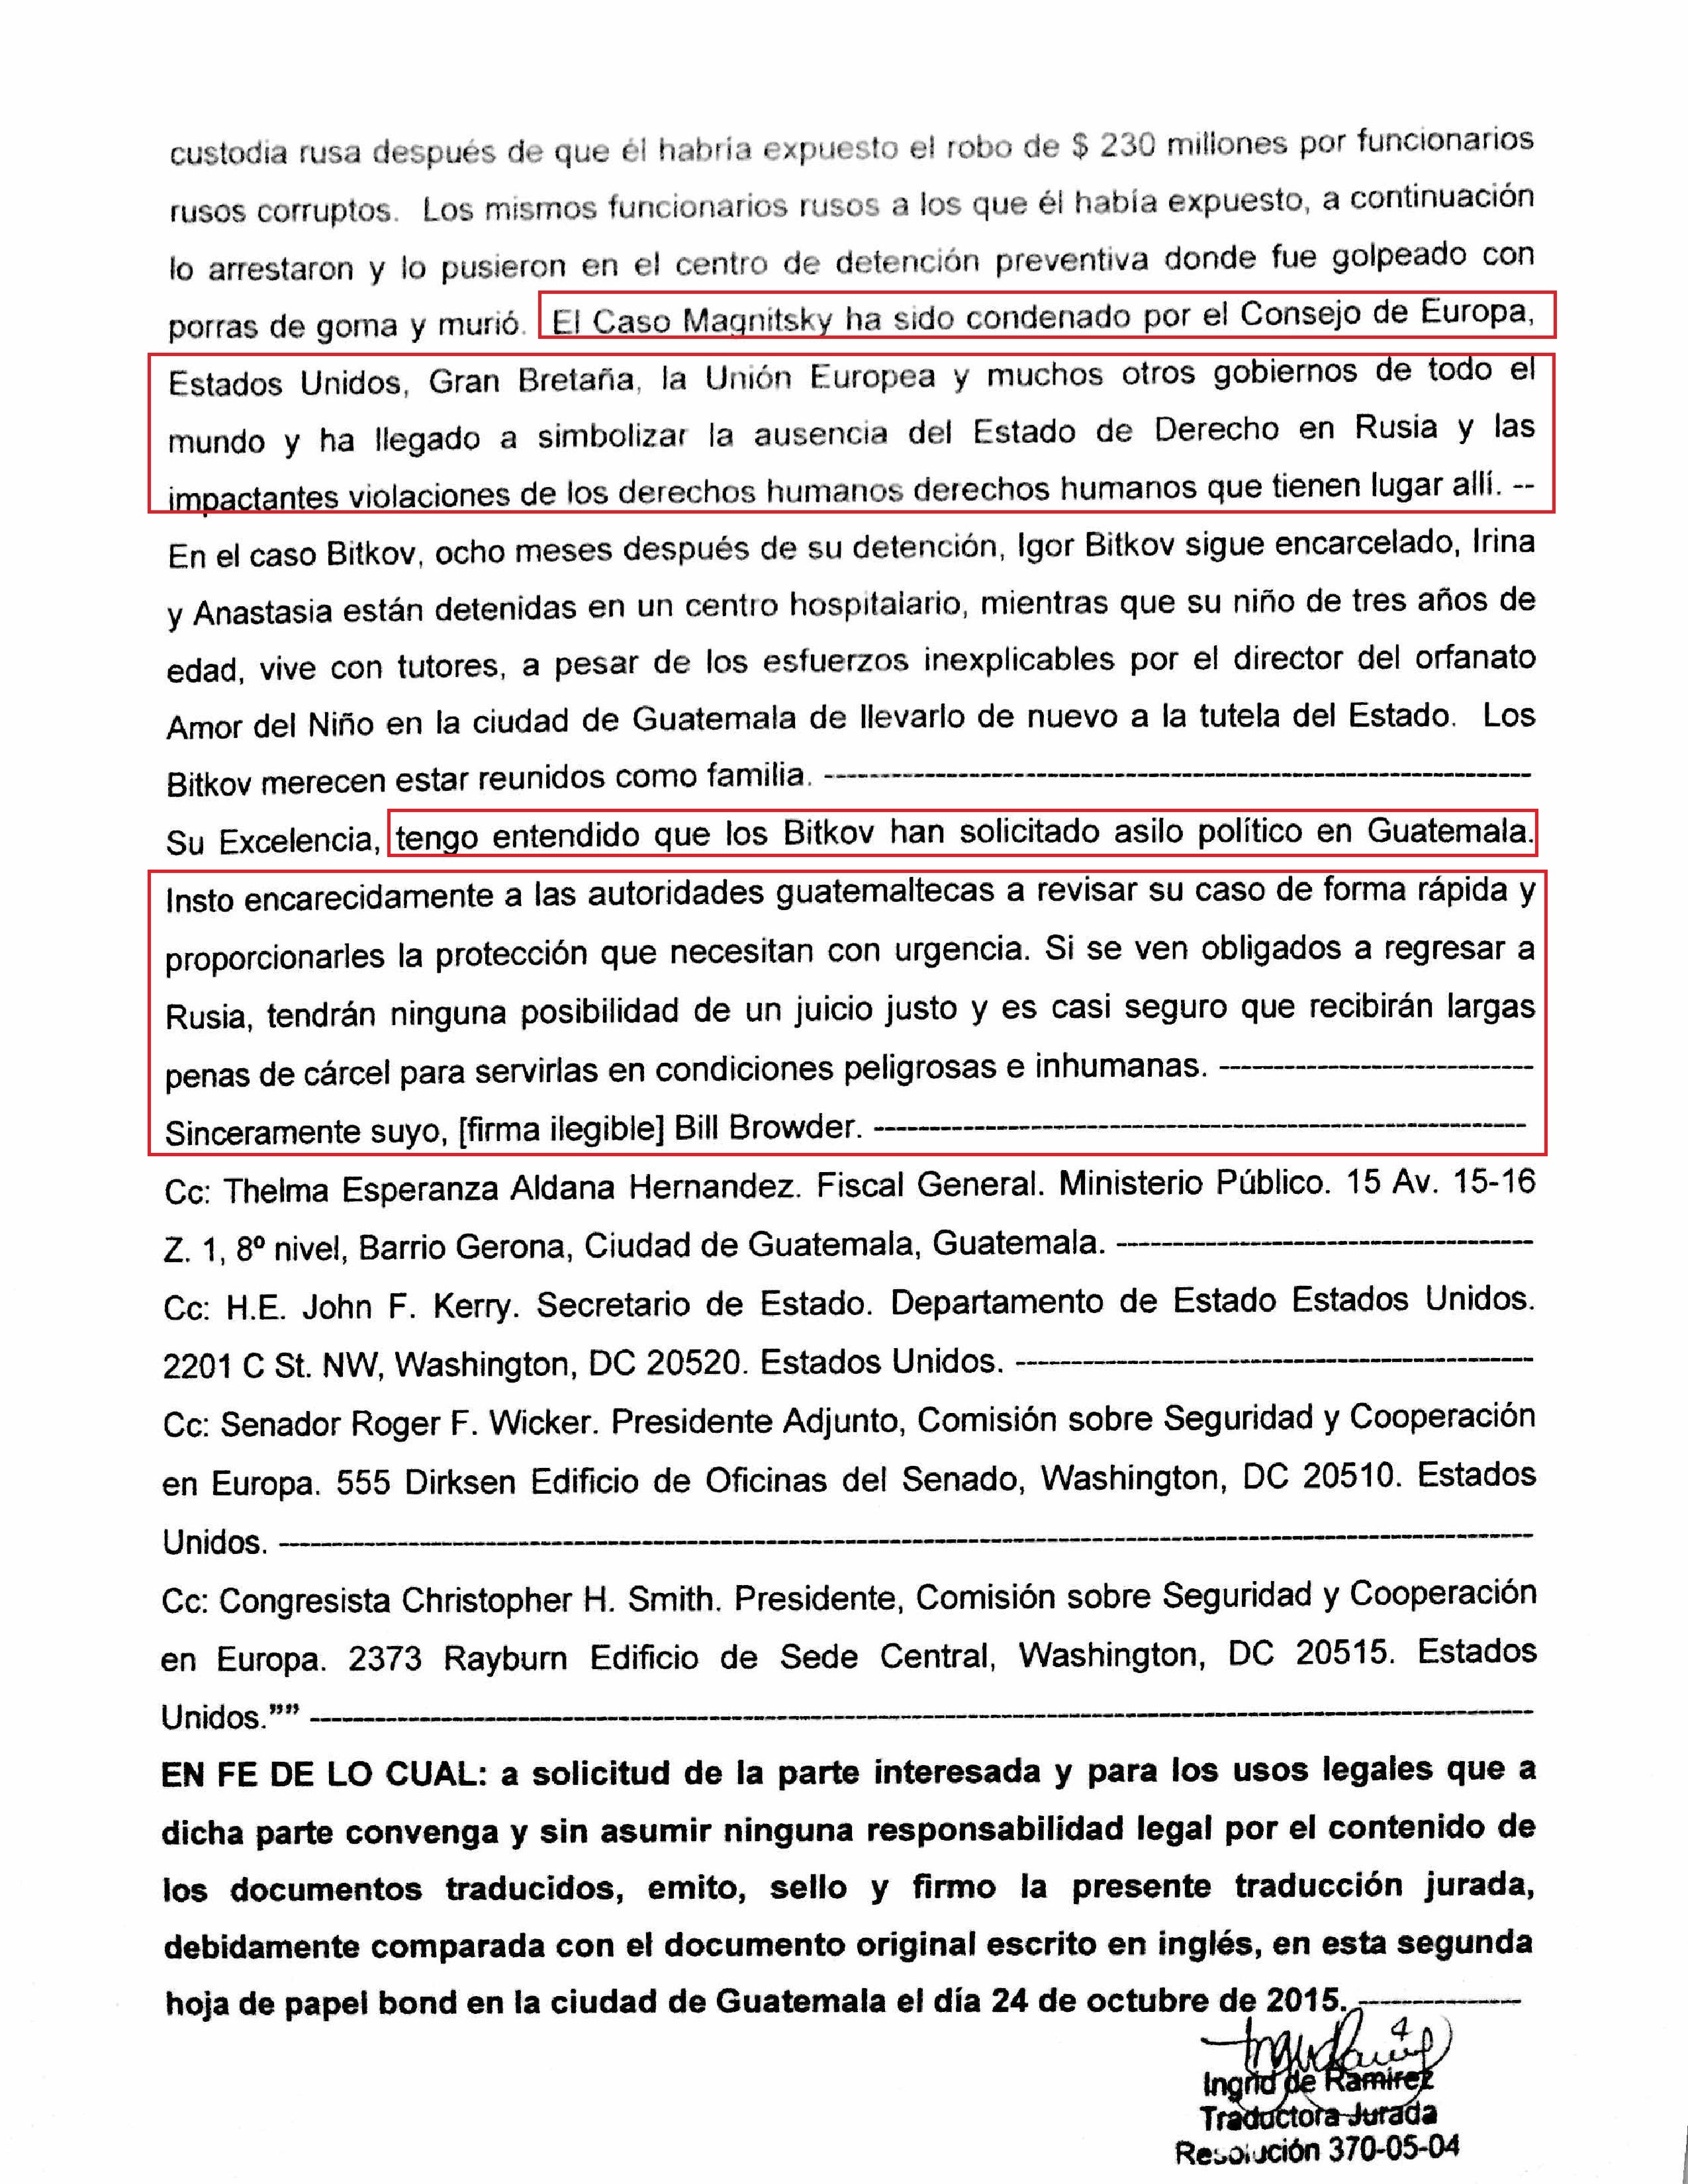 Traducción Jurada Carta de Bill Browder para Alejandro Baltazar Maldonado Aguirre Presidente de la República de Guatemala (parte dos)